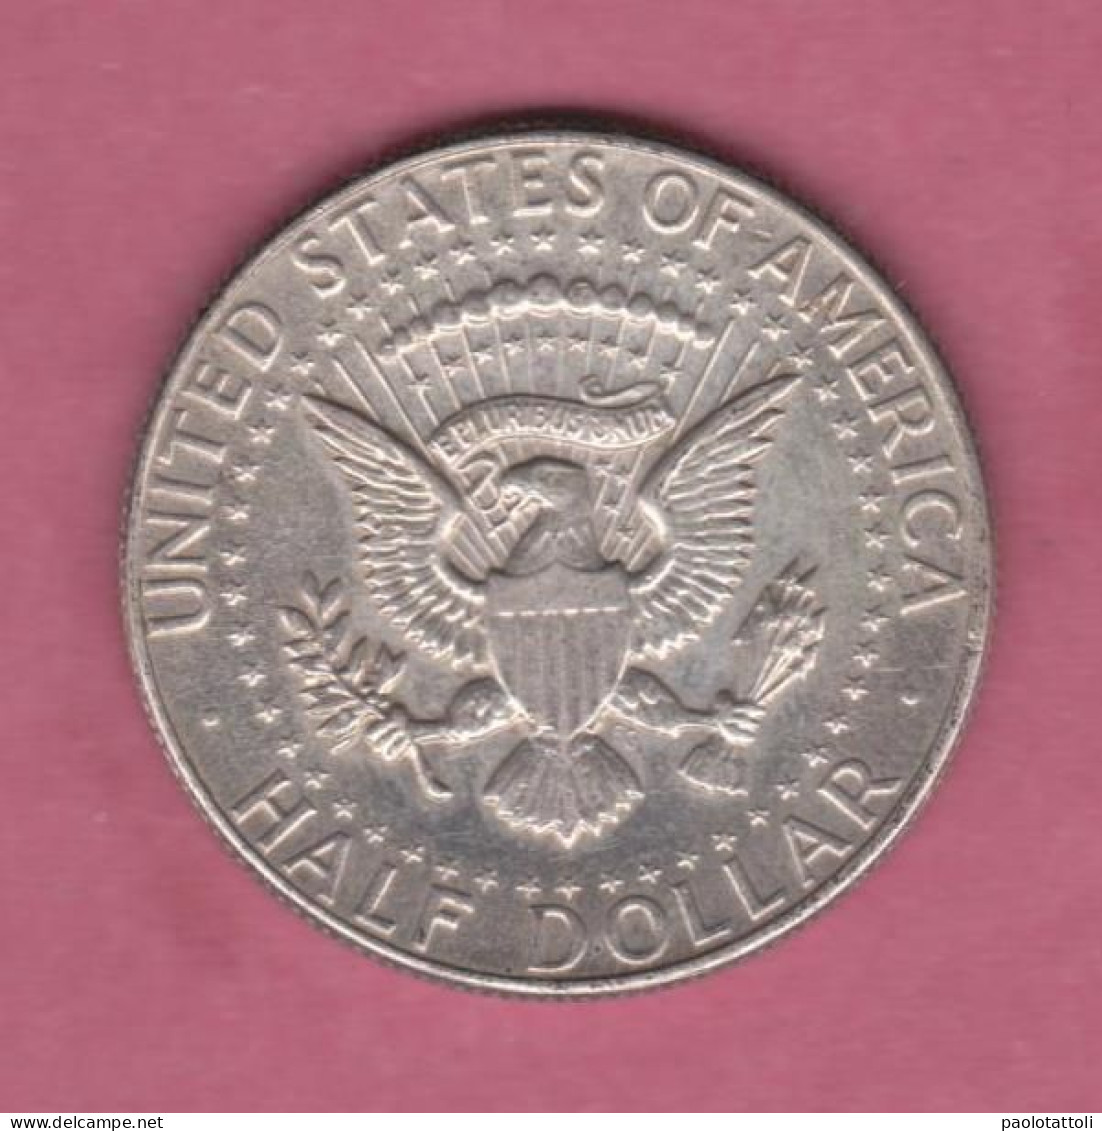 USA, 1964- Half Dollar- 90% Silver- Obverse Portrait Of John F. Kennedy. - Gedenkmünzen